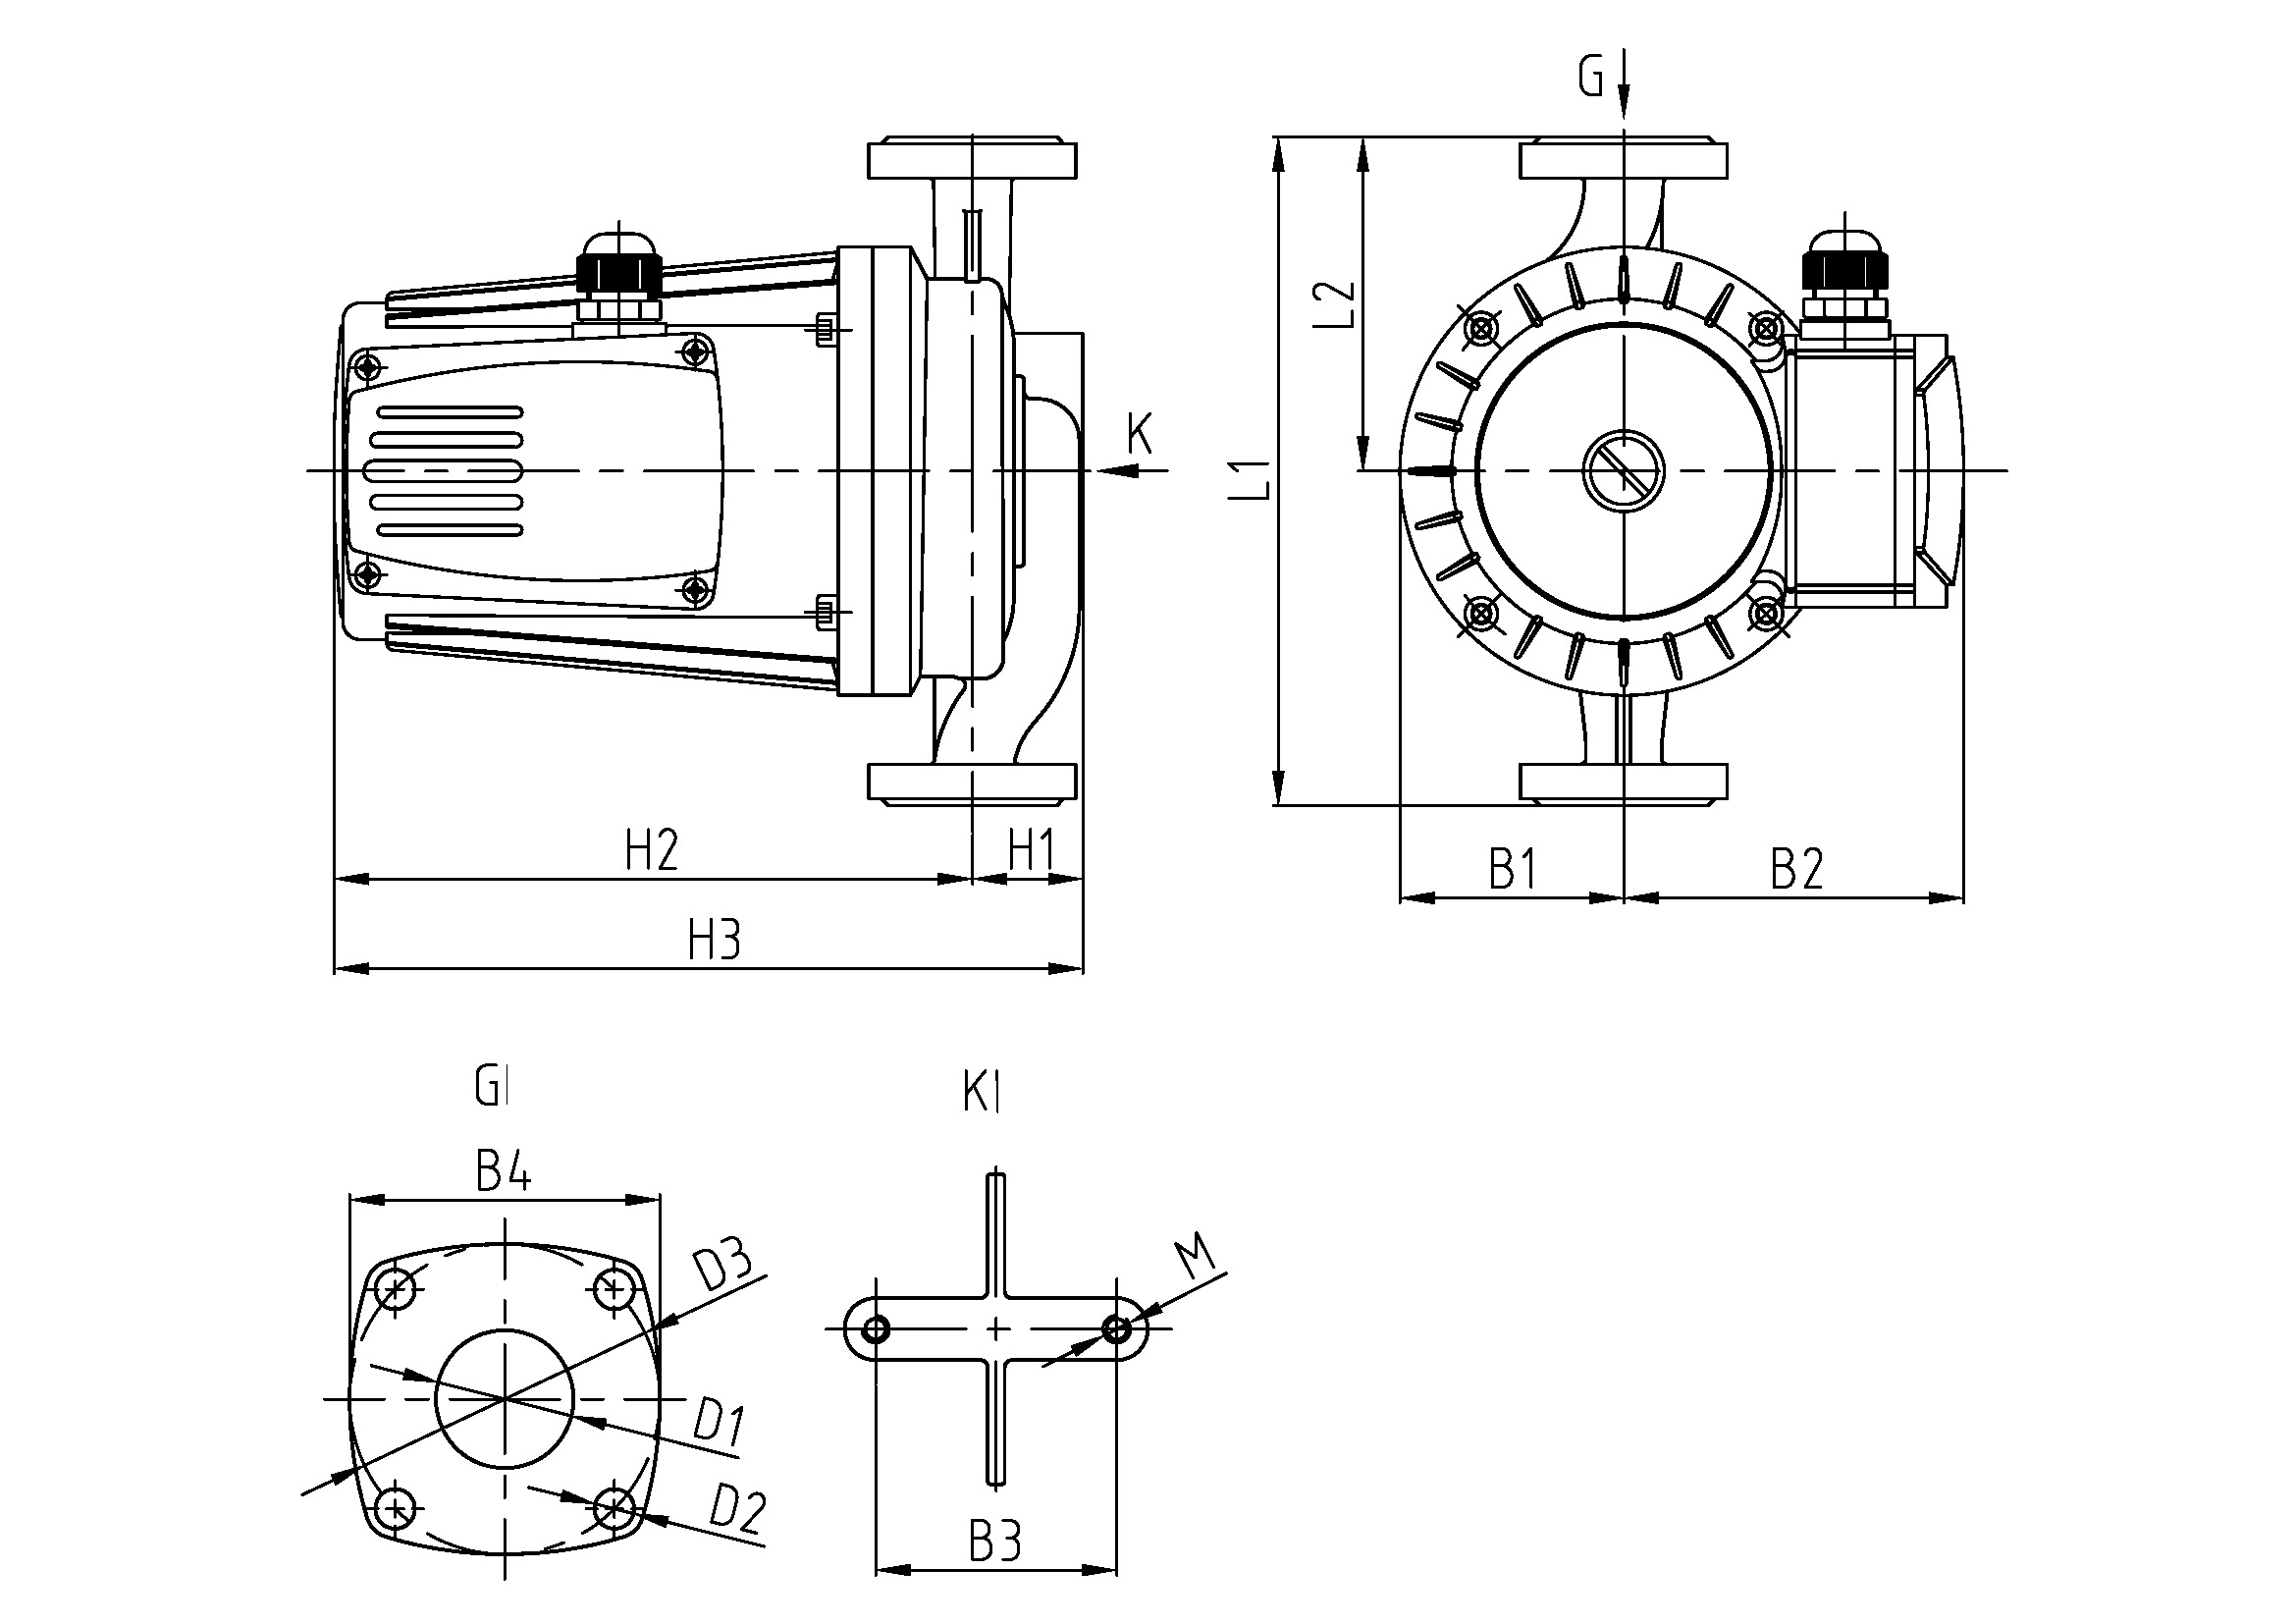 Pompa di circolazione Basic Pro 32-9SF a tre velocità con circolazione flangiata